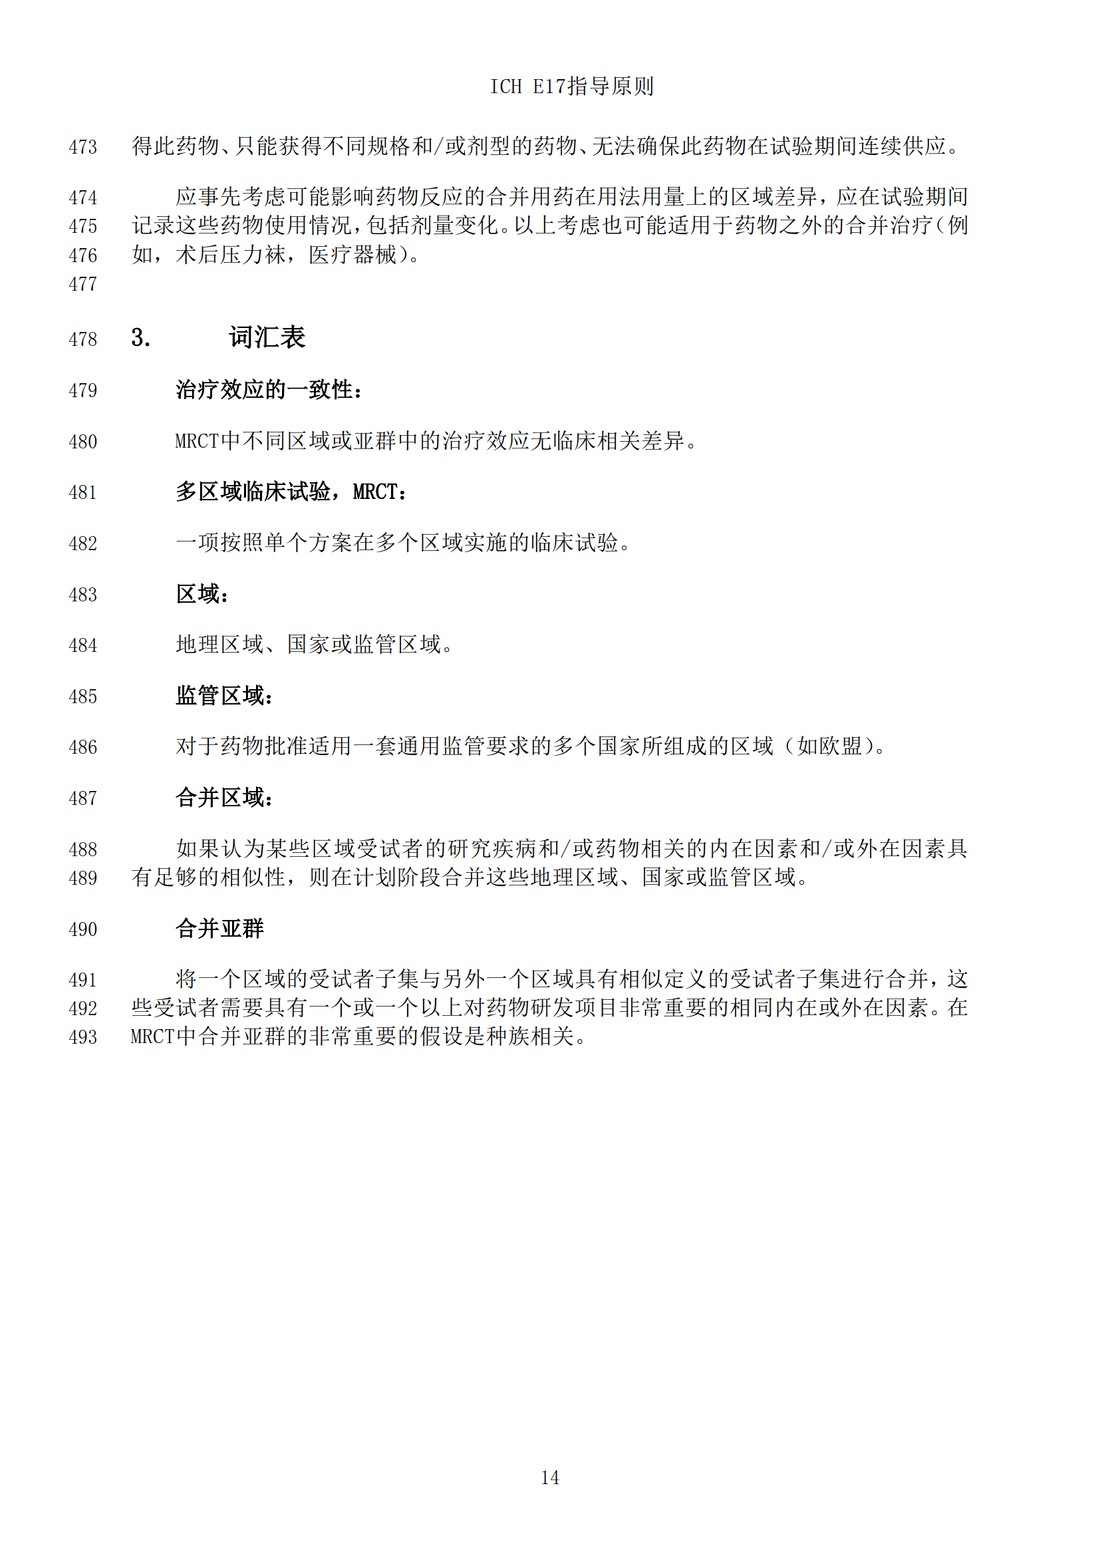 E17多区域临床试验计划与设计的一般原则（中文翻译公开征求意见稿）_17.jpg